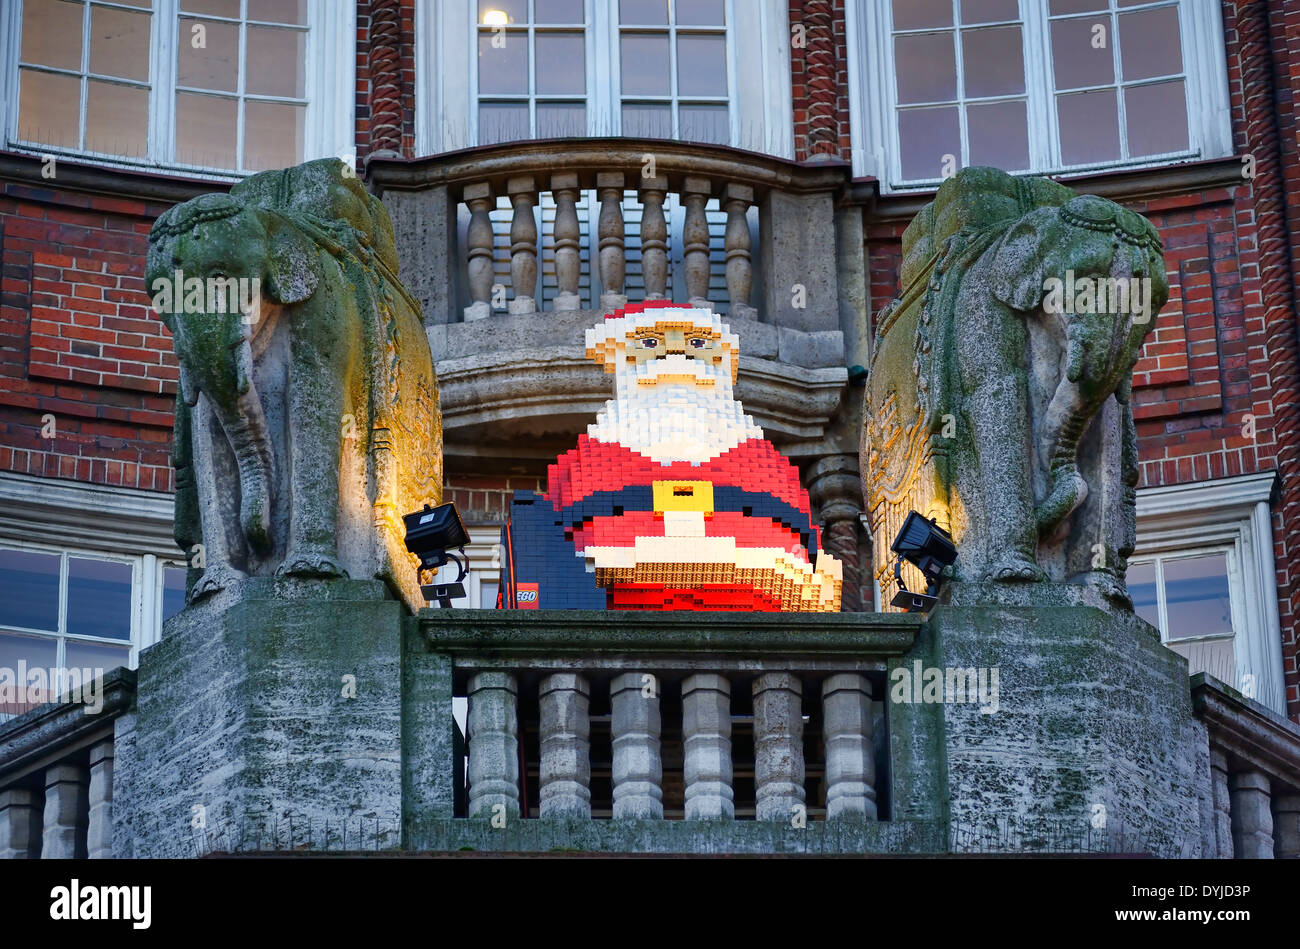 Lego-Weihnachtsmann bei Galeria Kaufhof in Hamburg, Deutschland, Europa  Stock Photo - Alamy